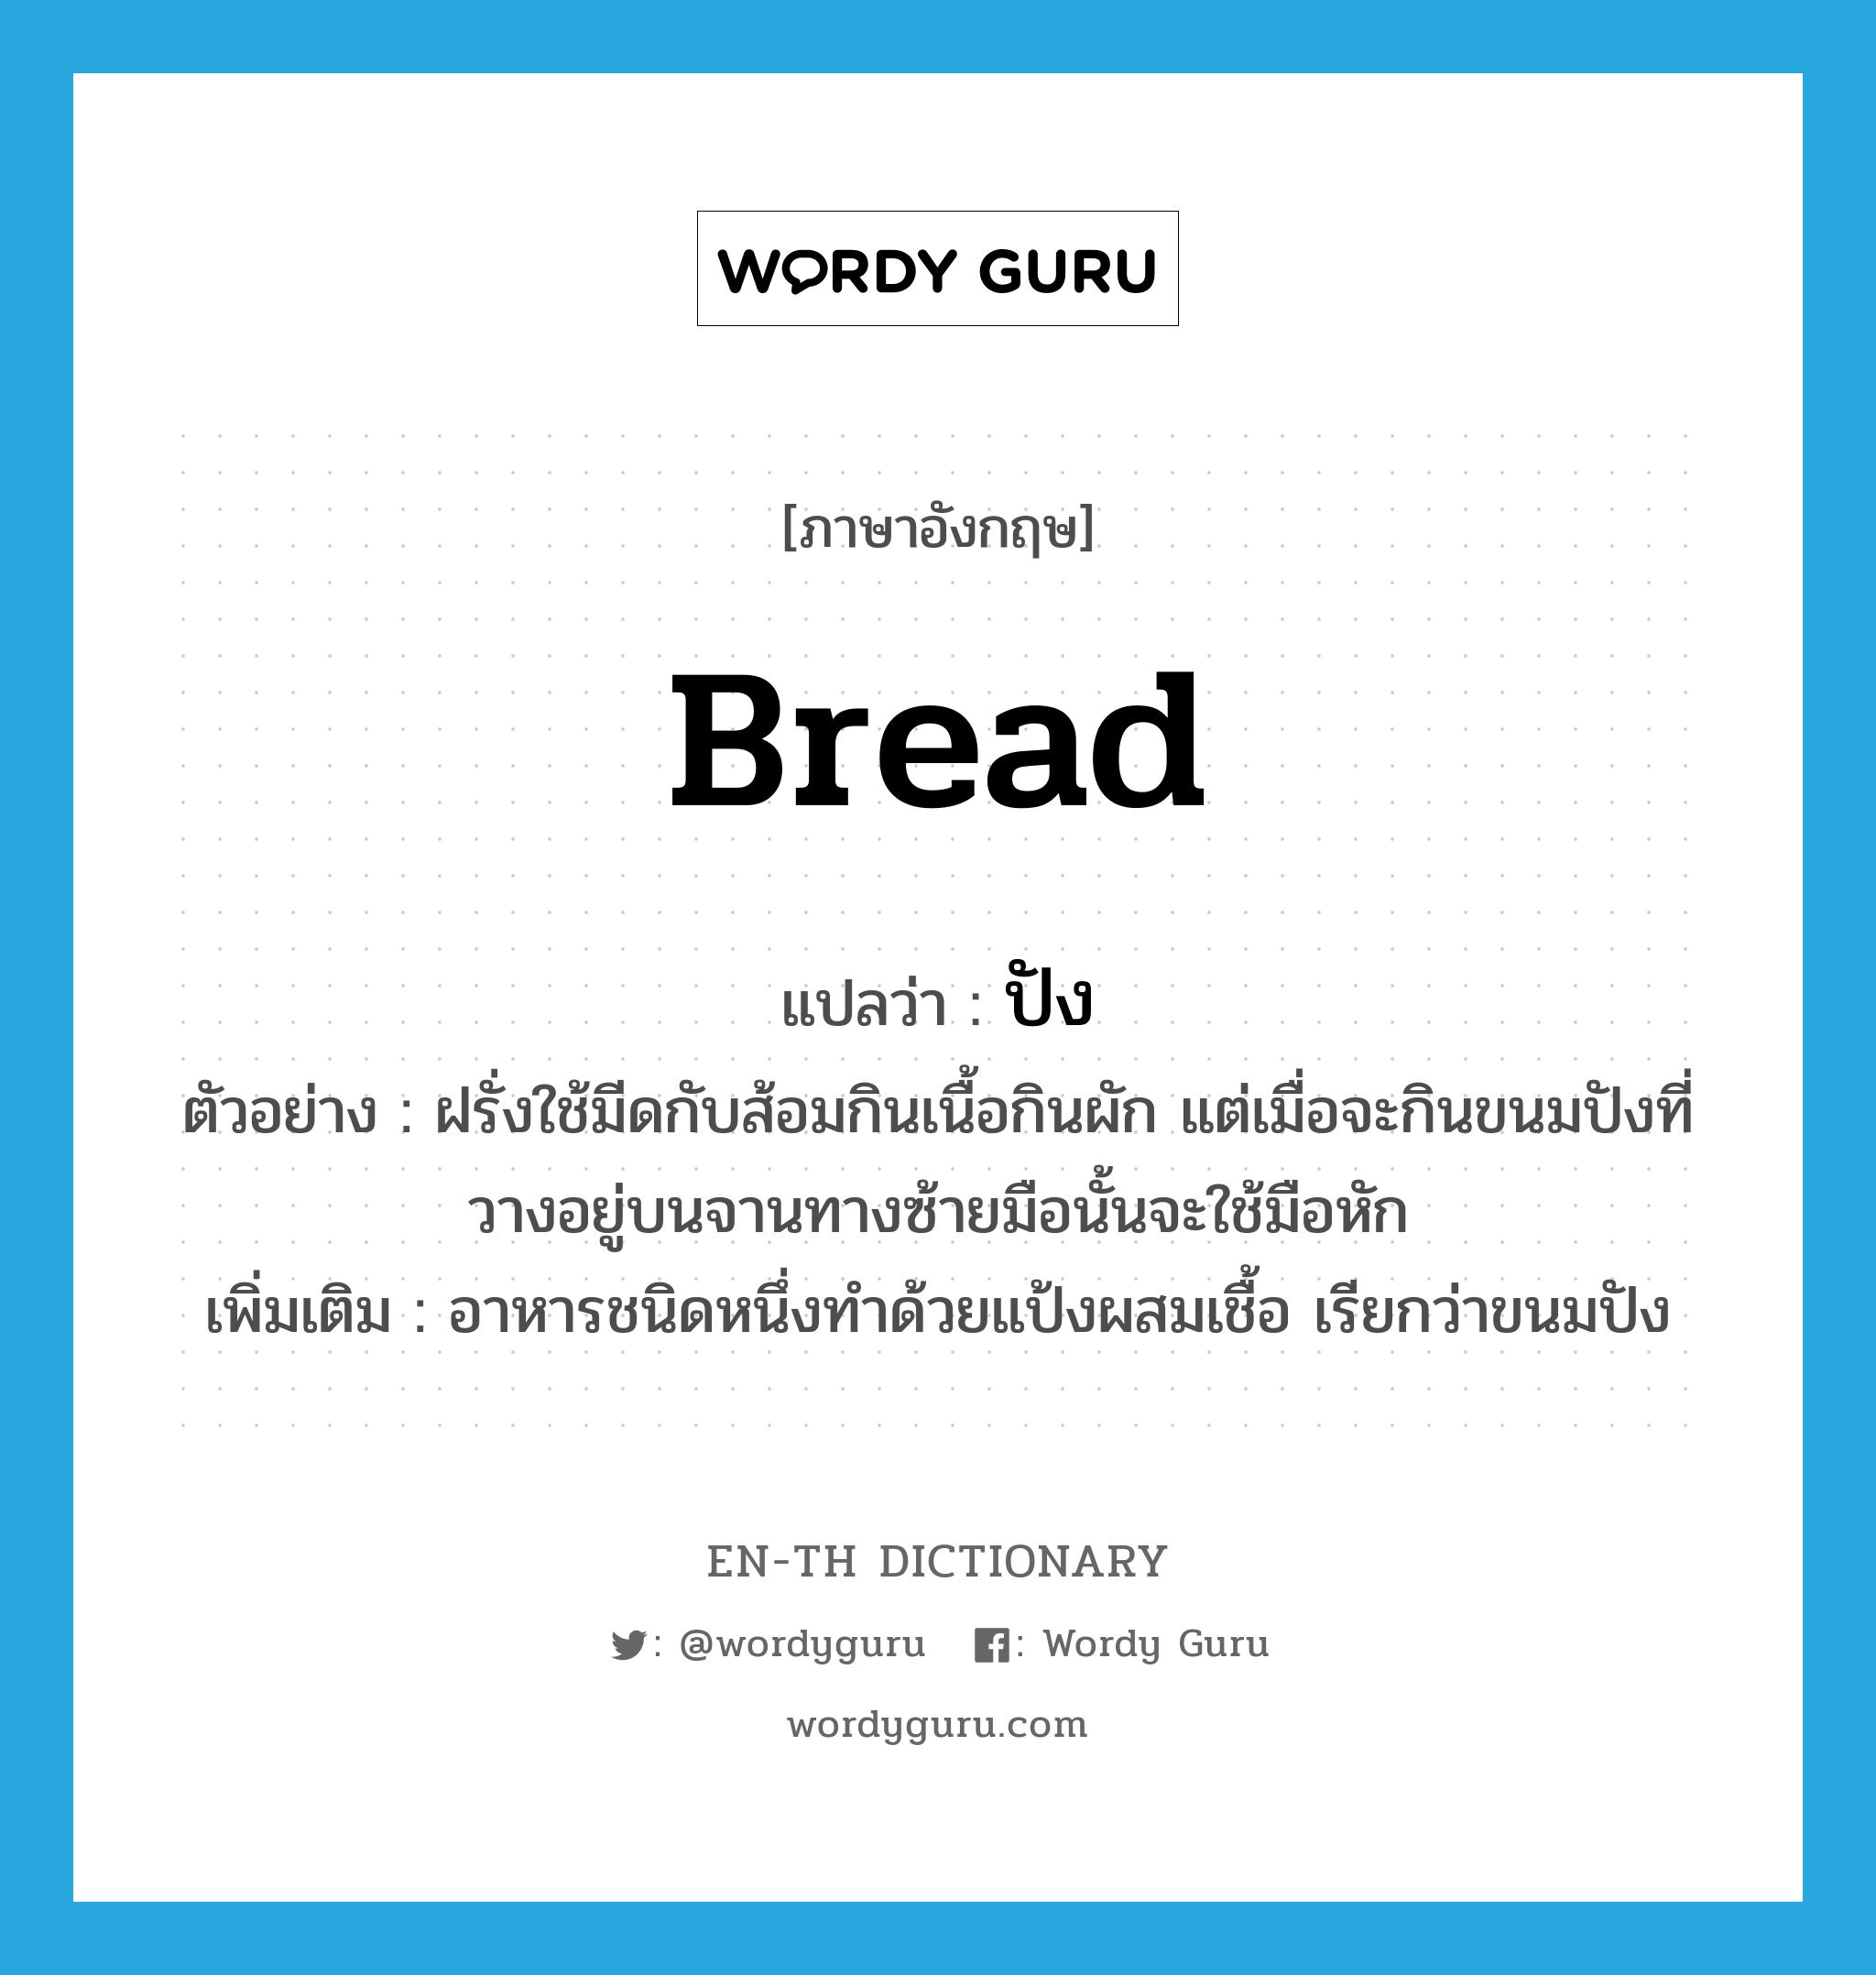 bread แปลว่า?, คำศัพท์ภาษาอังกฤษ bread แปลว่า ปัง ประเภท N ตัวอย่าง ฝรั่งใช้มีดกับส้อมกินเนื้อกินผัก แต่เมื่อจะกินขนมปังที่วางอยู่บนจานทางซ้ายมือนั้นจะใช้มือหัก เพิ่มเติม อาหารชนิดหนึ่งทำด้วยแป้งผสมเชื้อ เรียกว่าขนมปัง หมวด N